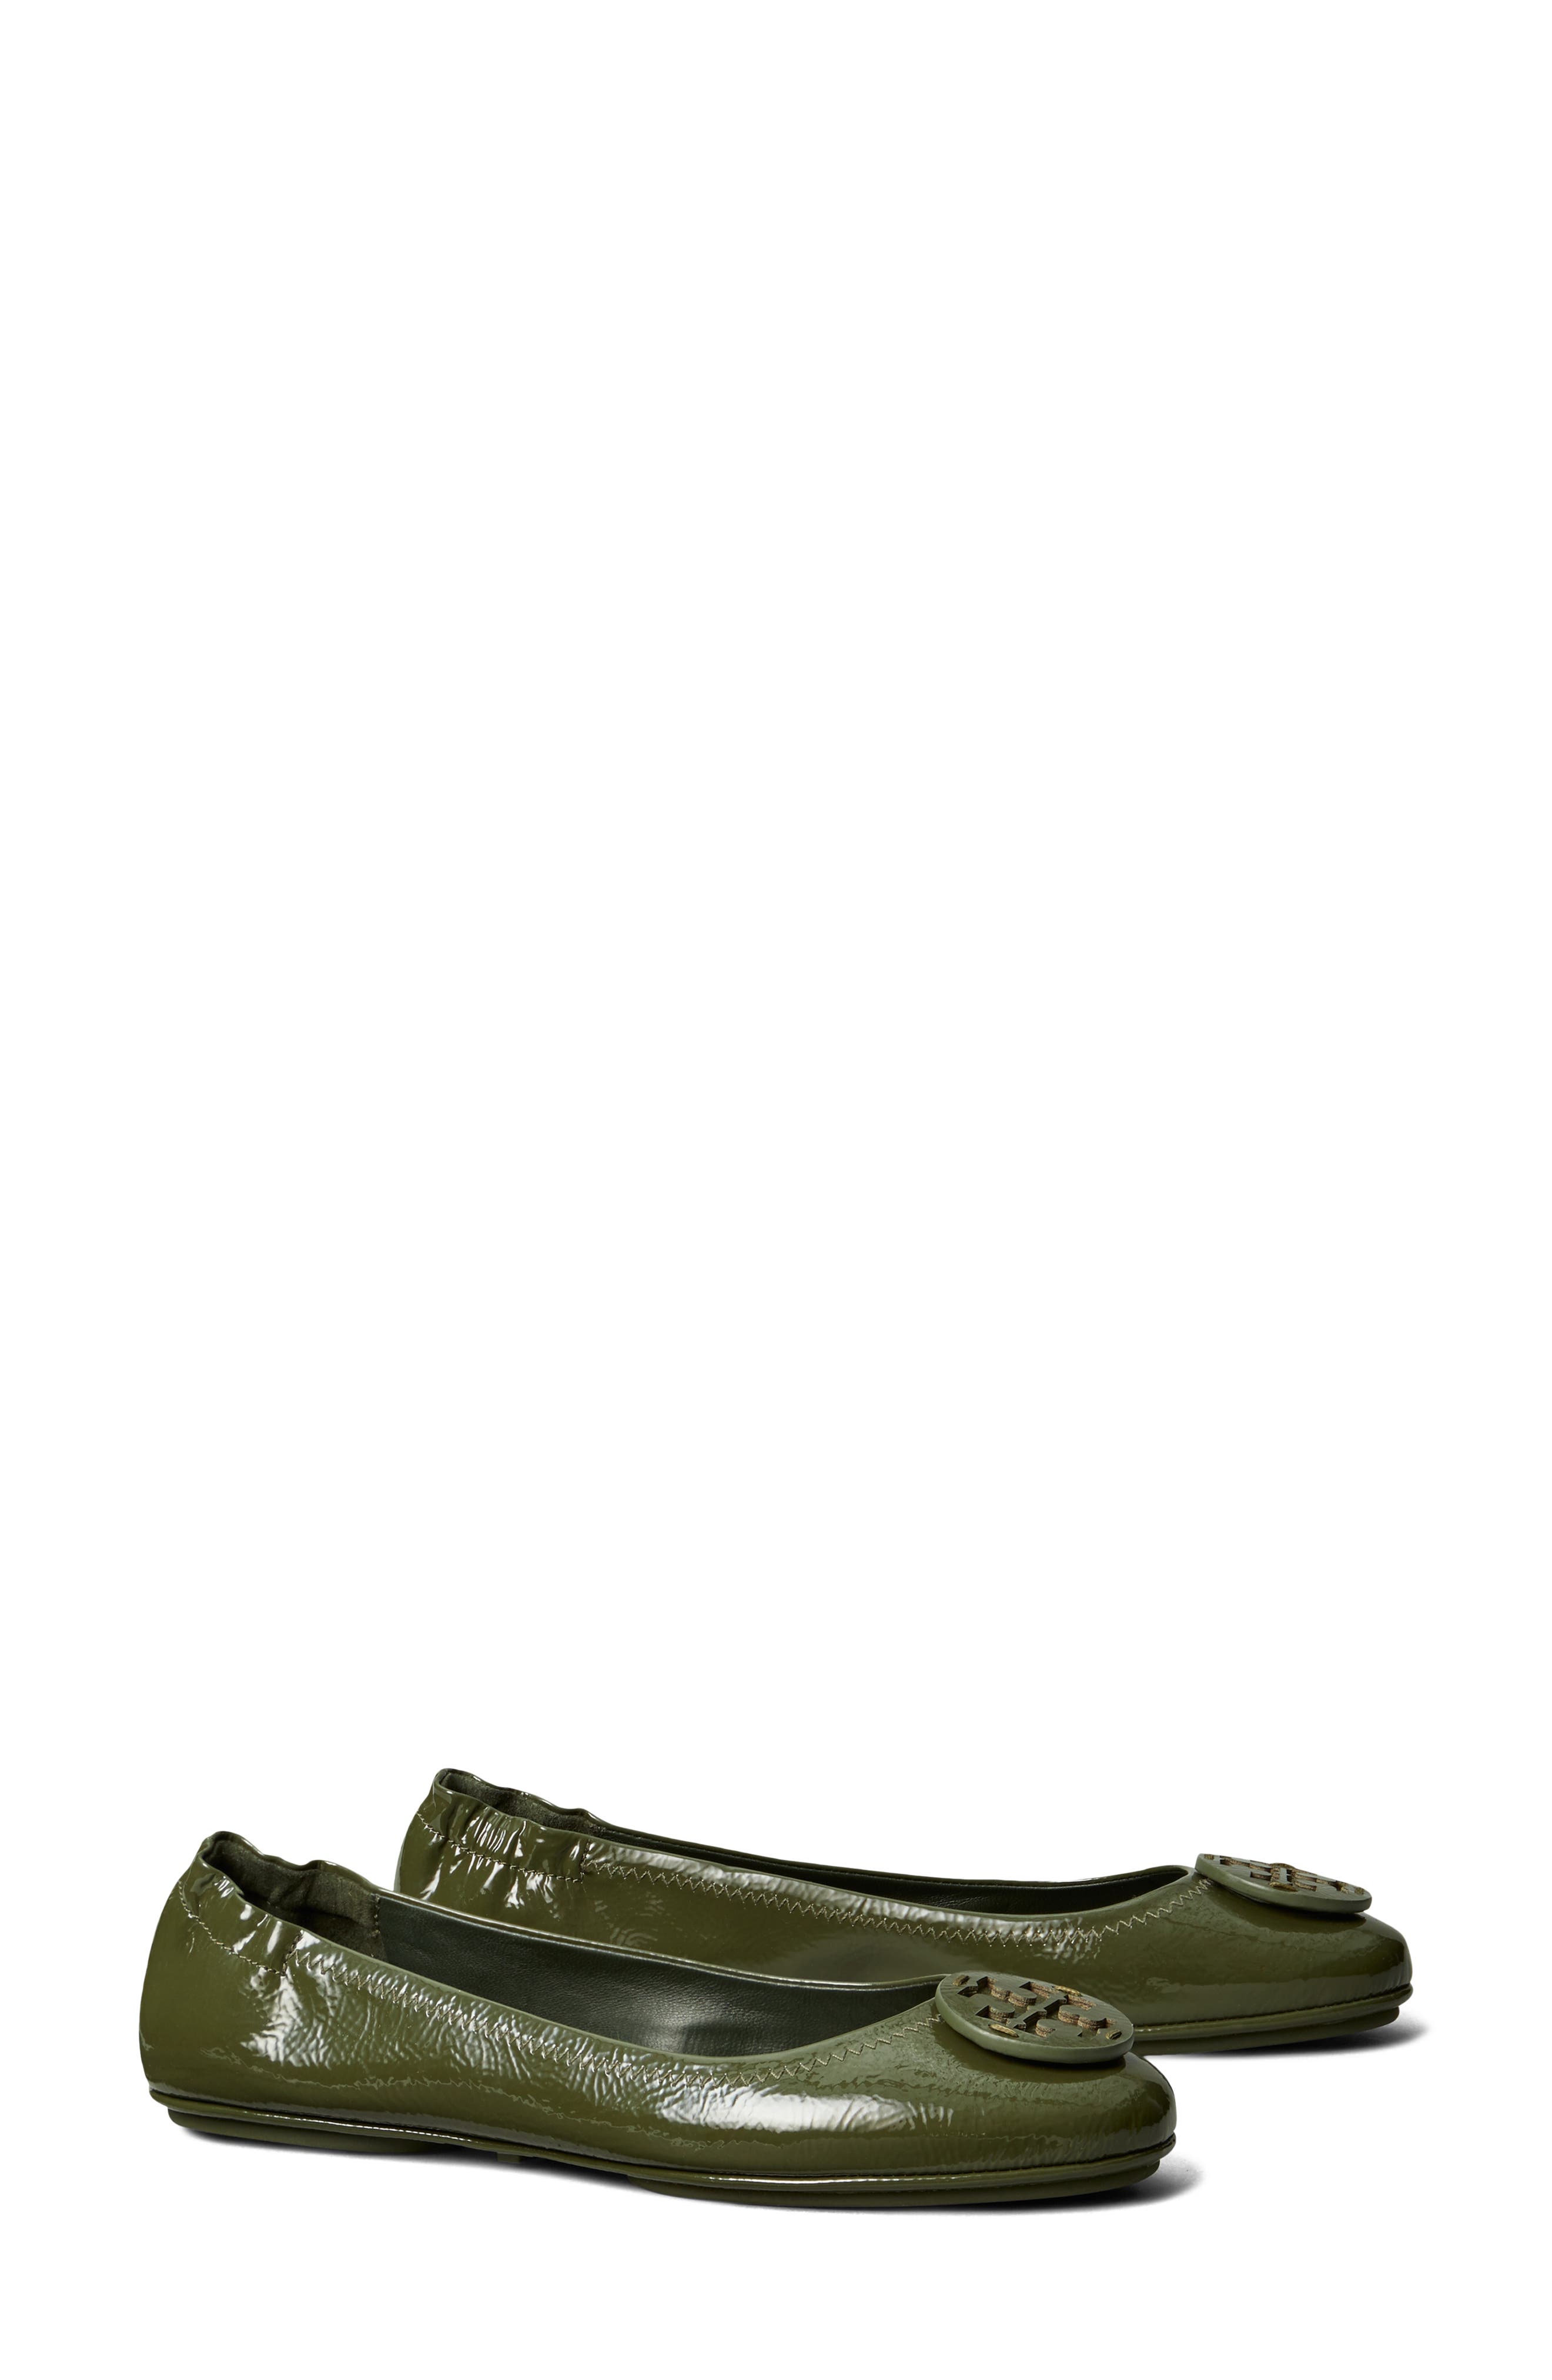 olive green designer shoes